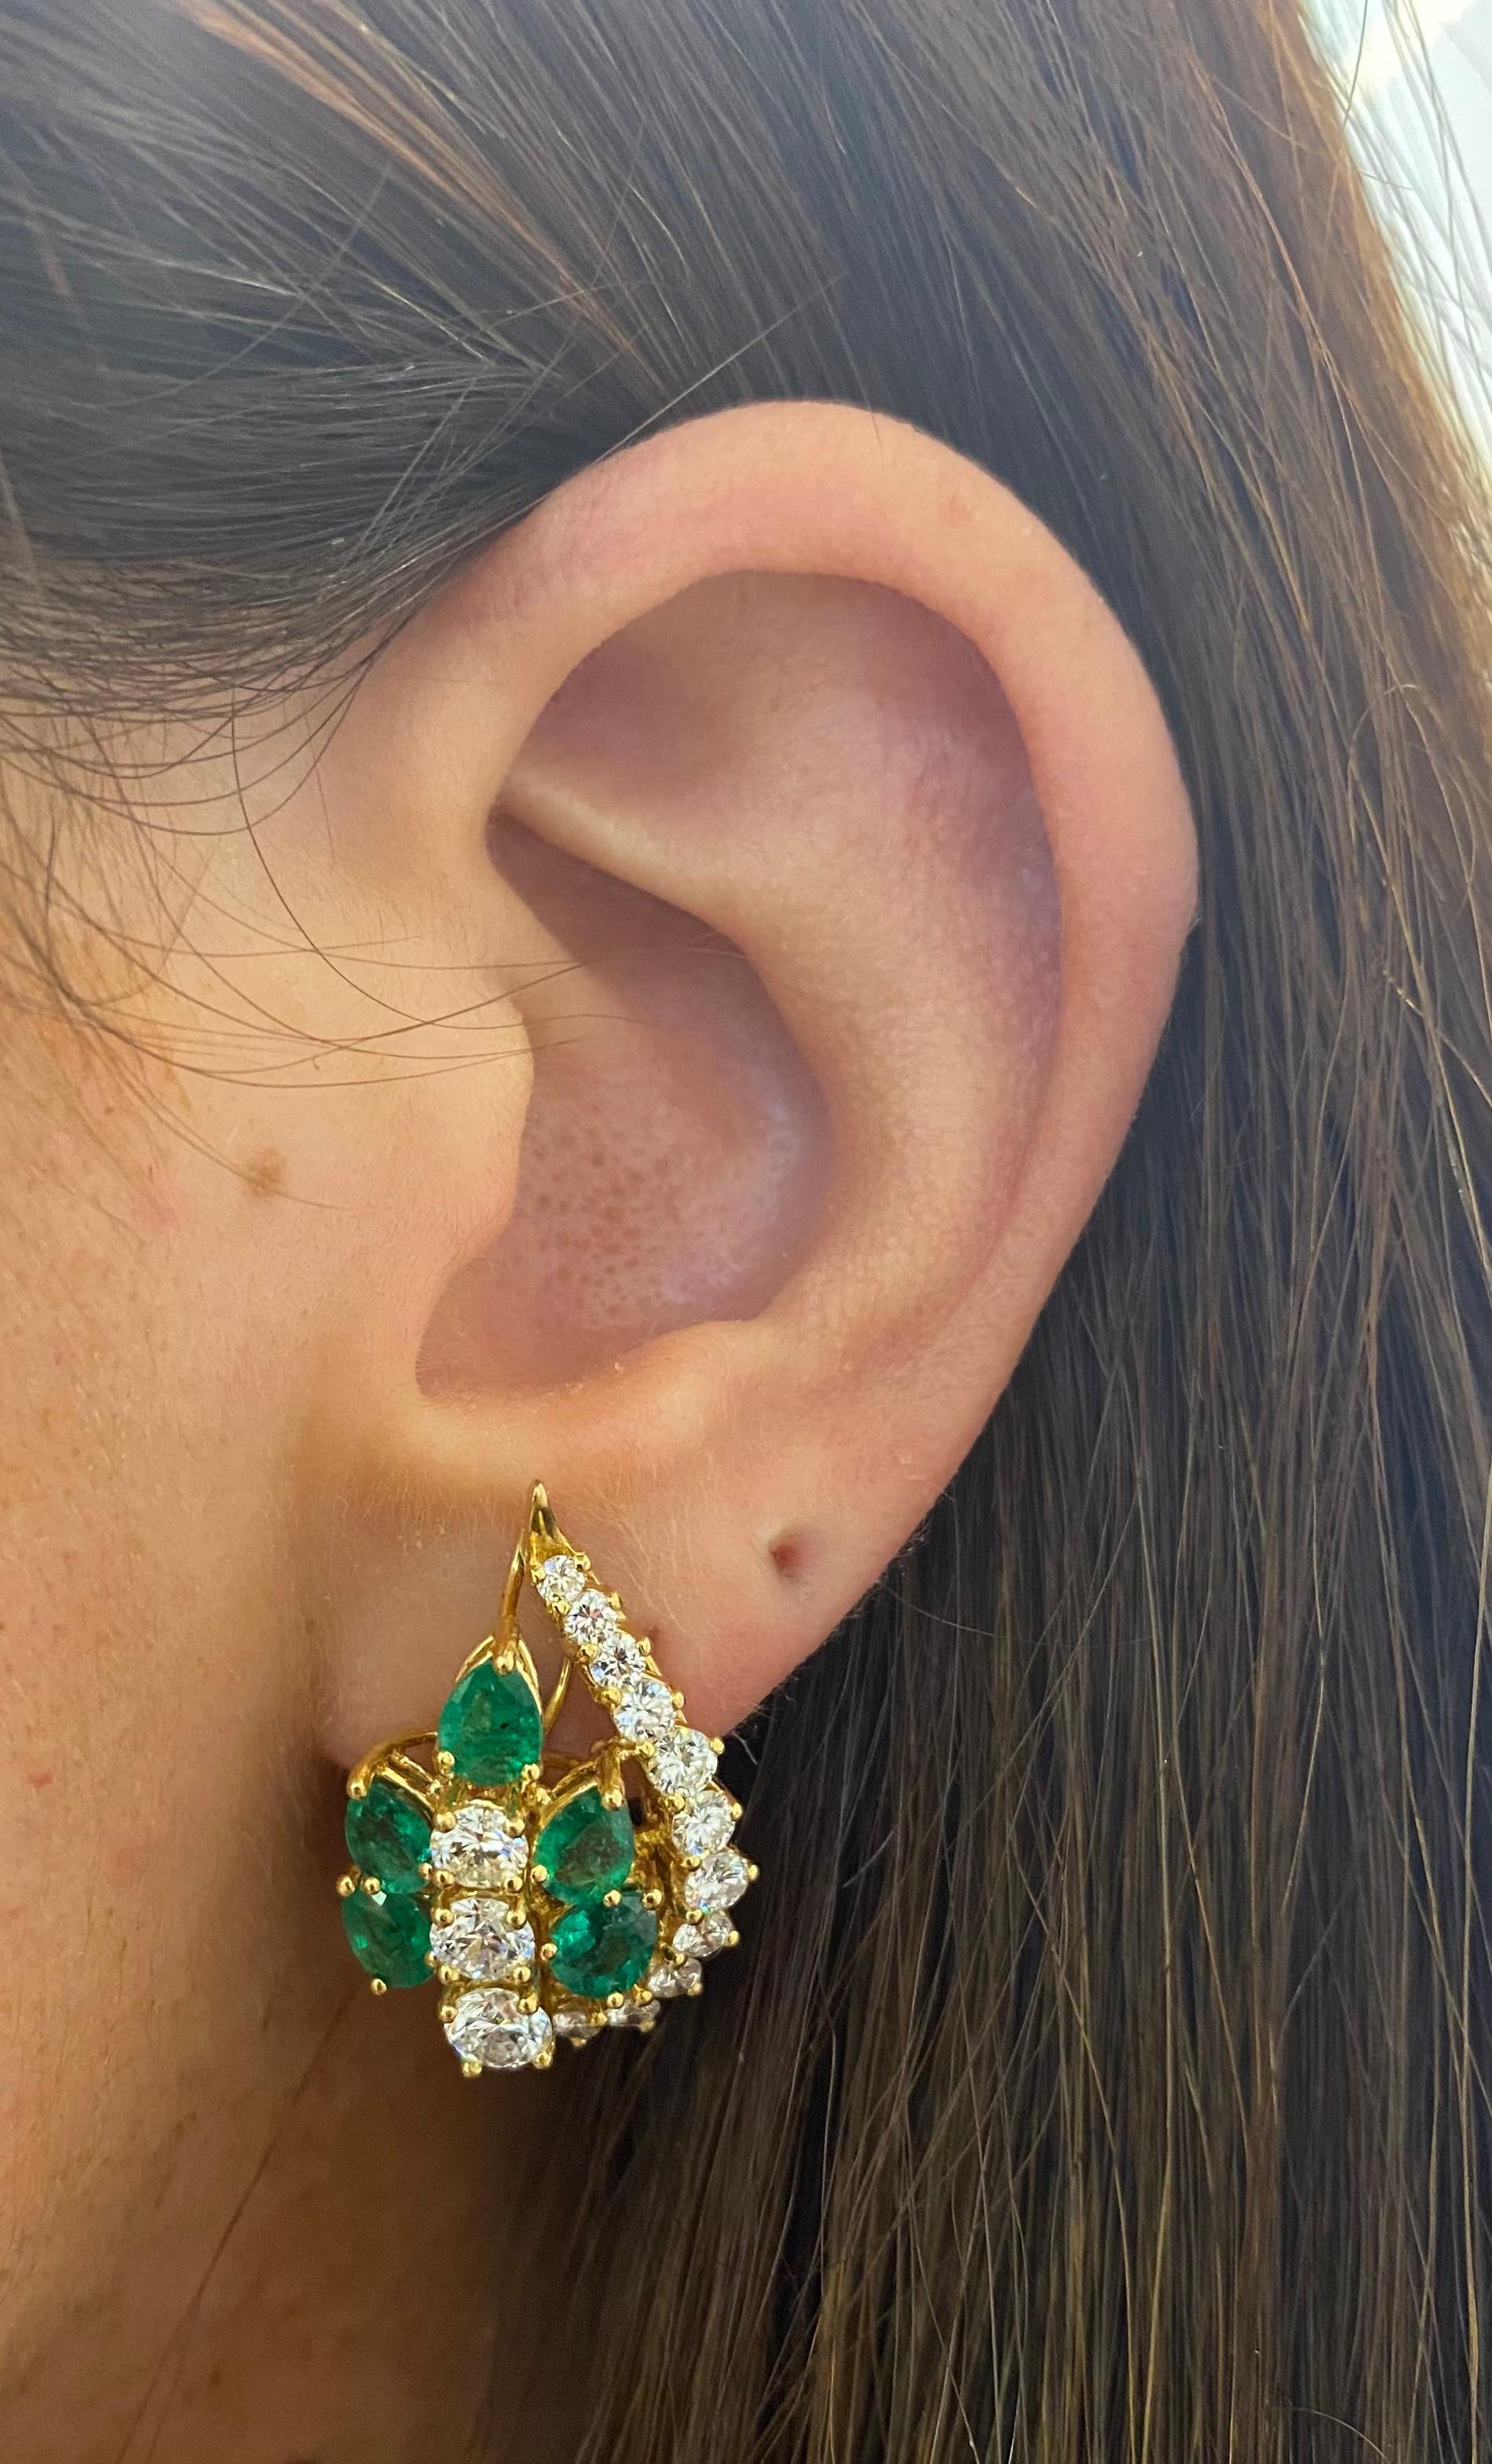 bestdressed earrings